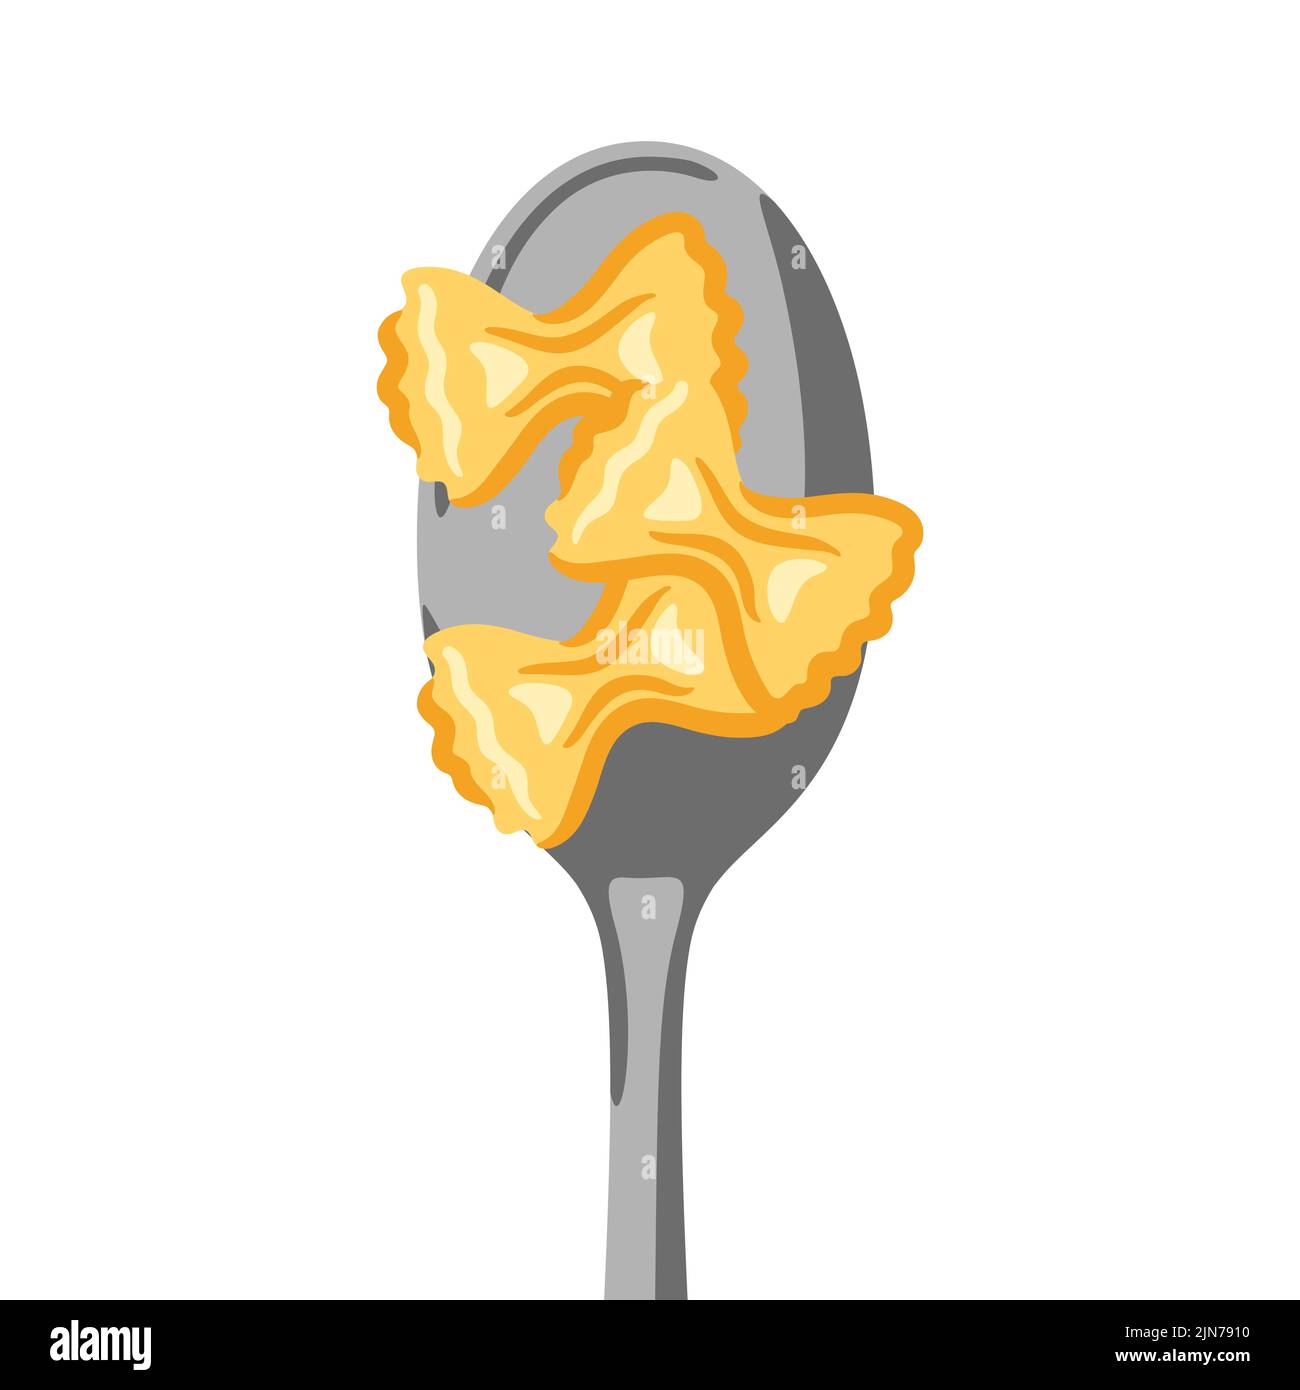 Illustrazione della pasta italiana sul cucchiaio. Immagine culinaria per menu di ristoranti. Illustrazione Vettoriale